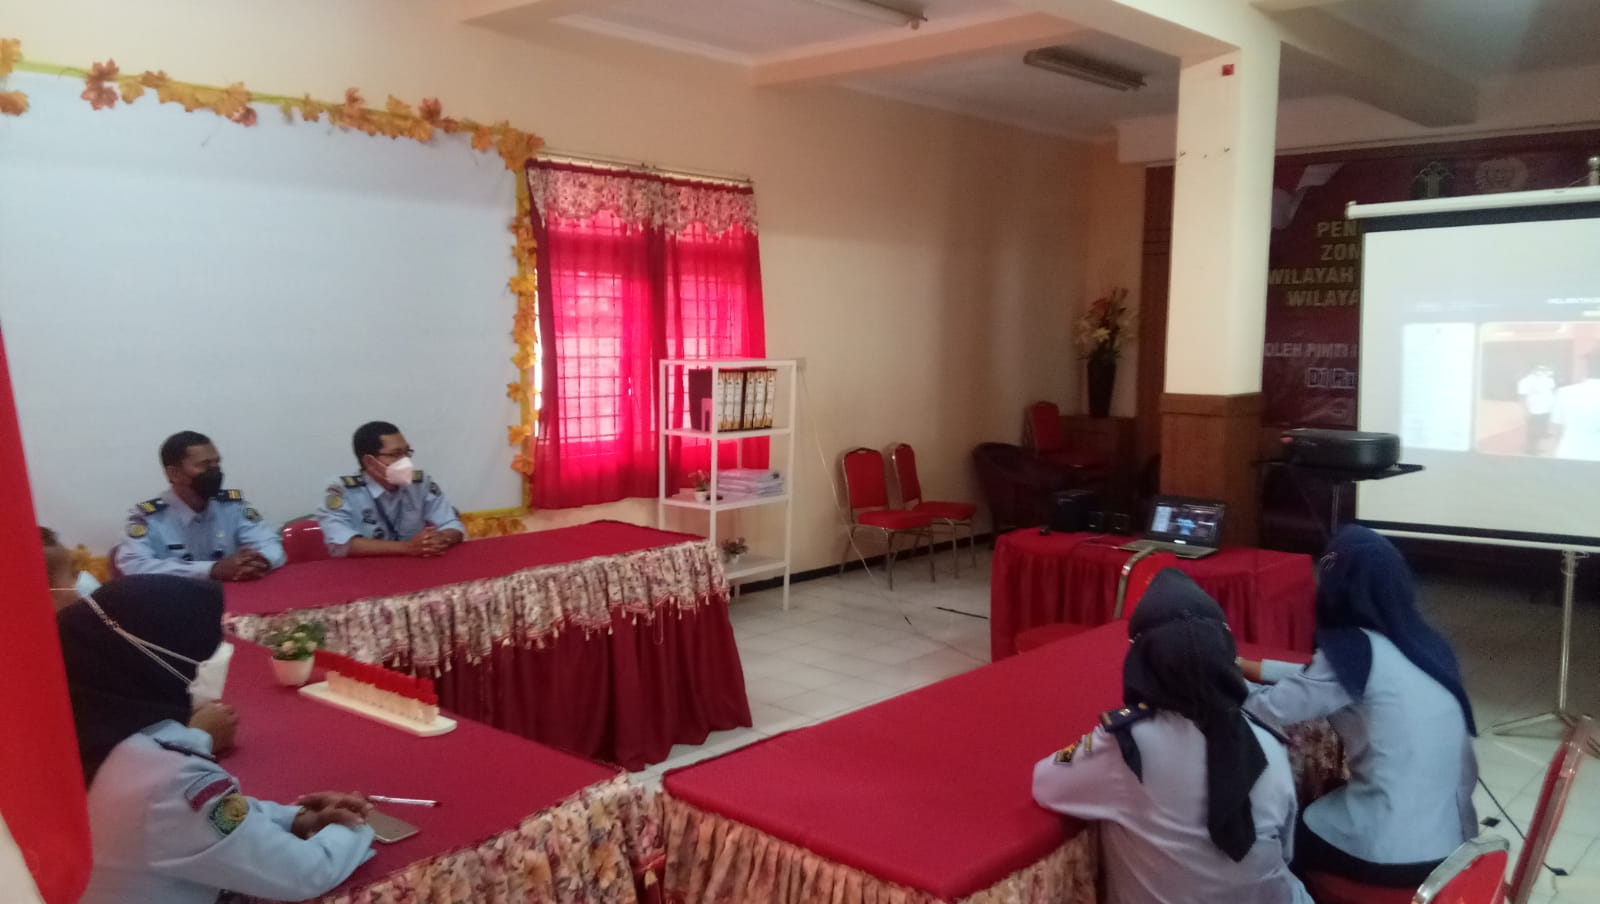 Kepala Rupbasan Surabaya Hadiri Pelantikan dan Pengambilan Sumpah/Janji Pejabat Administrasi dan Pejabat Fungsional  Tertentu di Lingkungan Kanwil Kemenkumham Jatim